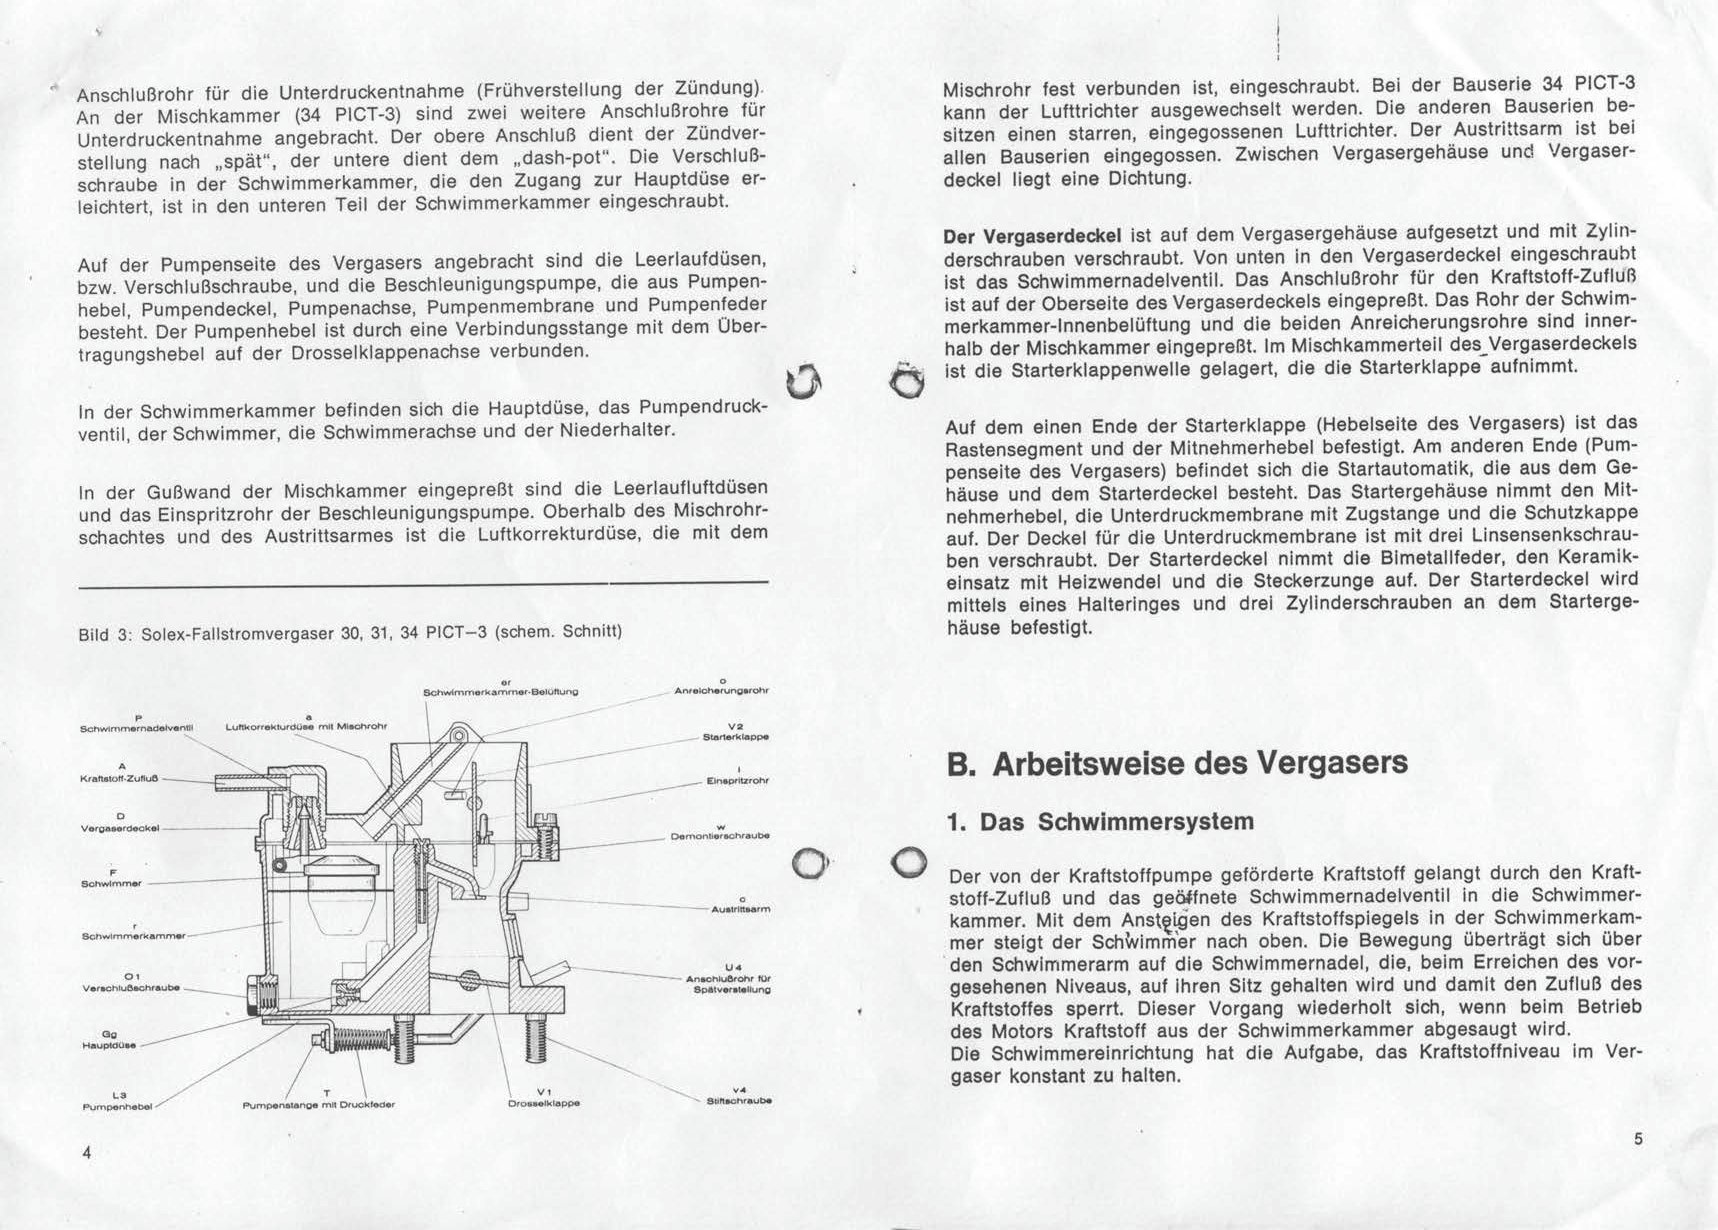  Solex Carburetor Manual - 30-34 PICT3 / 31-34 PICT-4 -  German